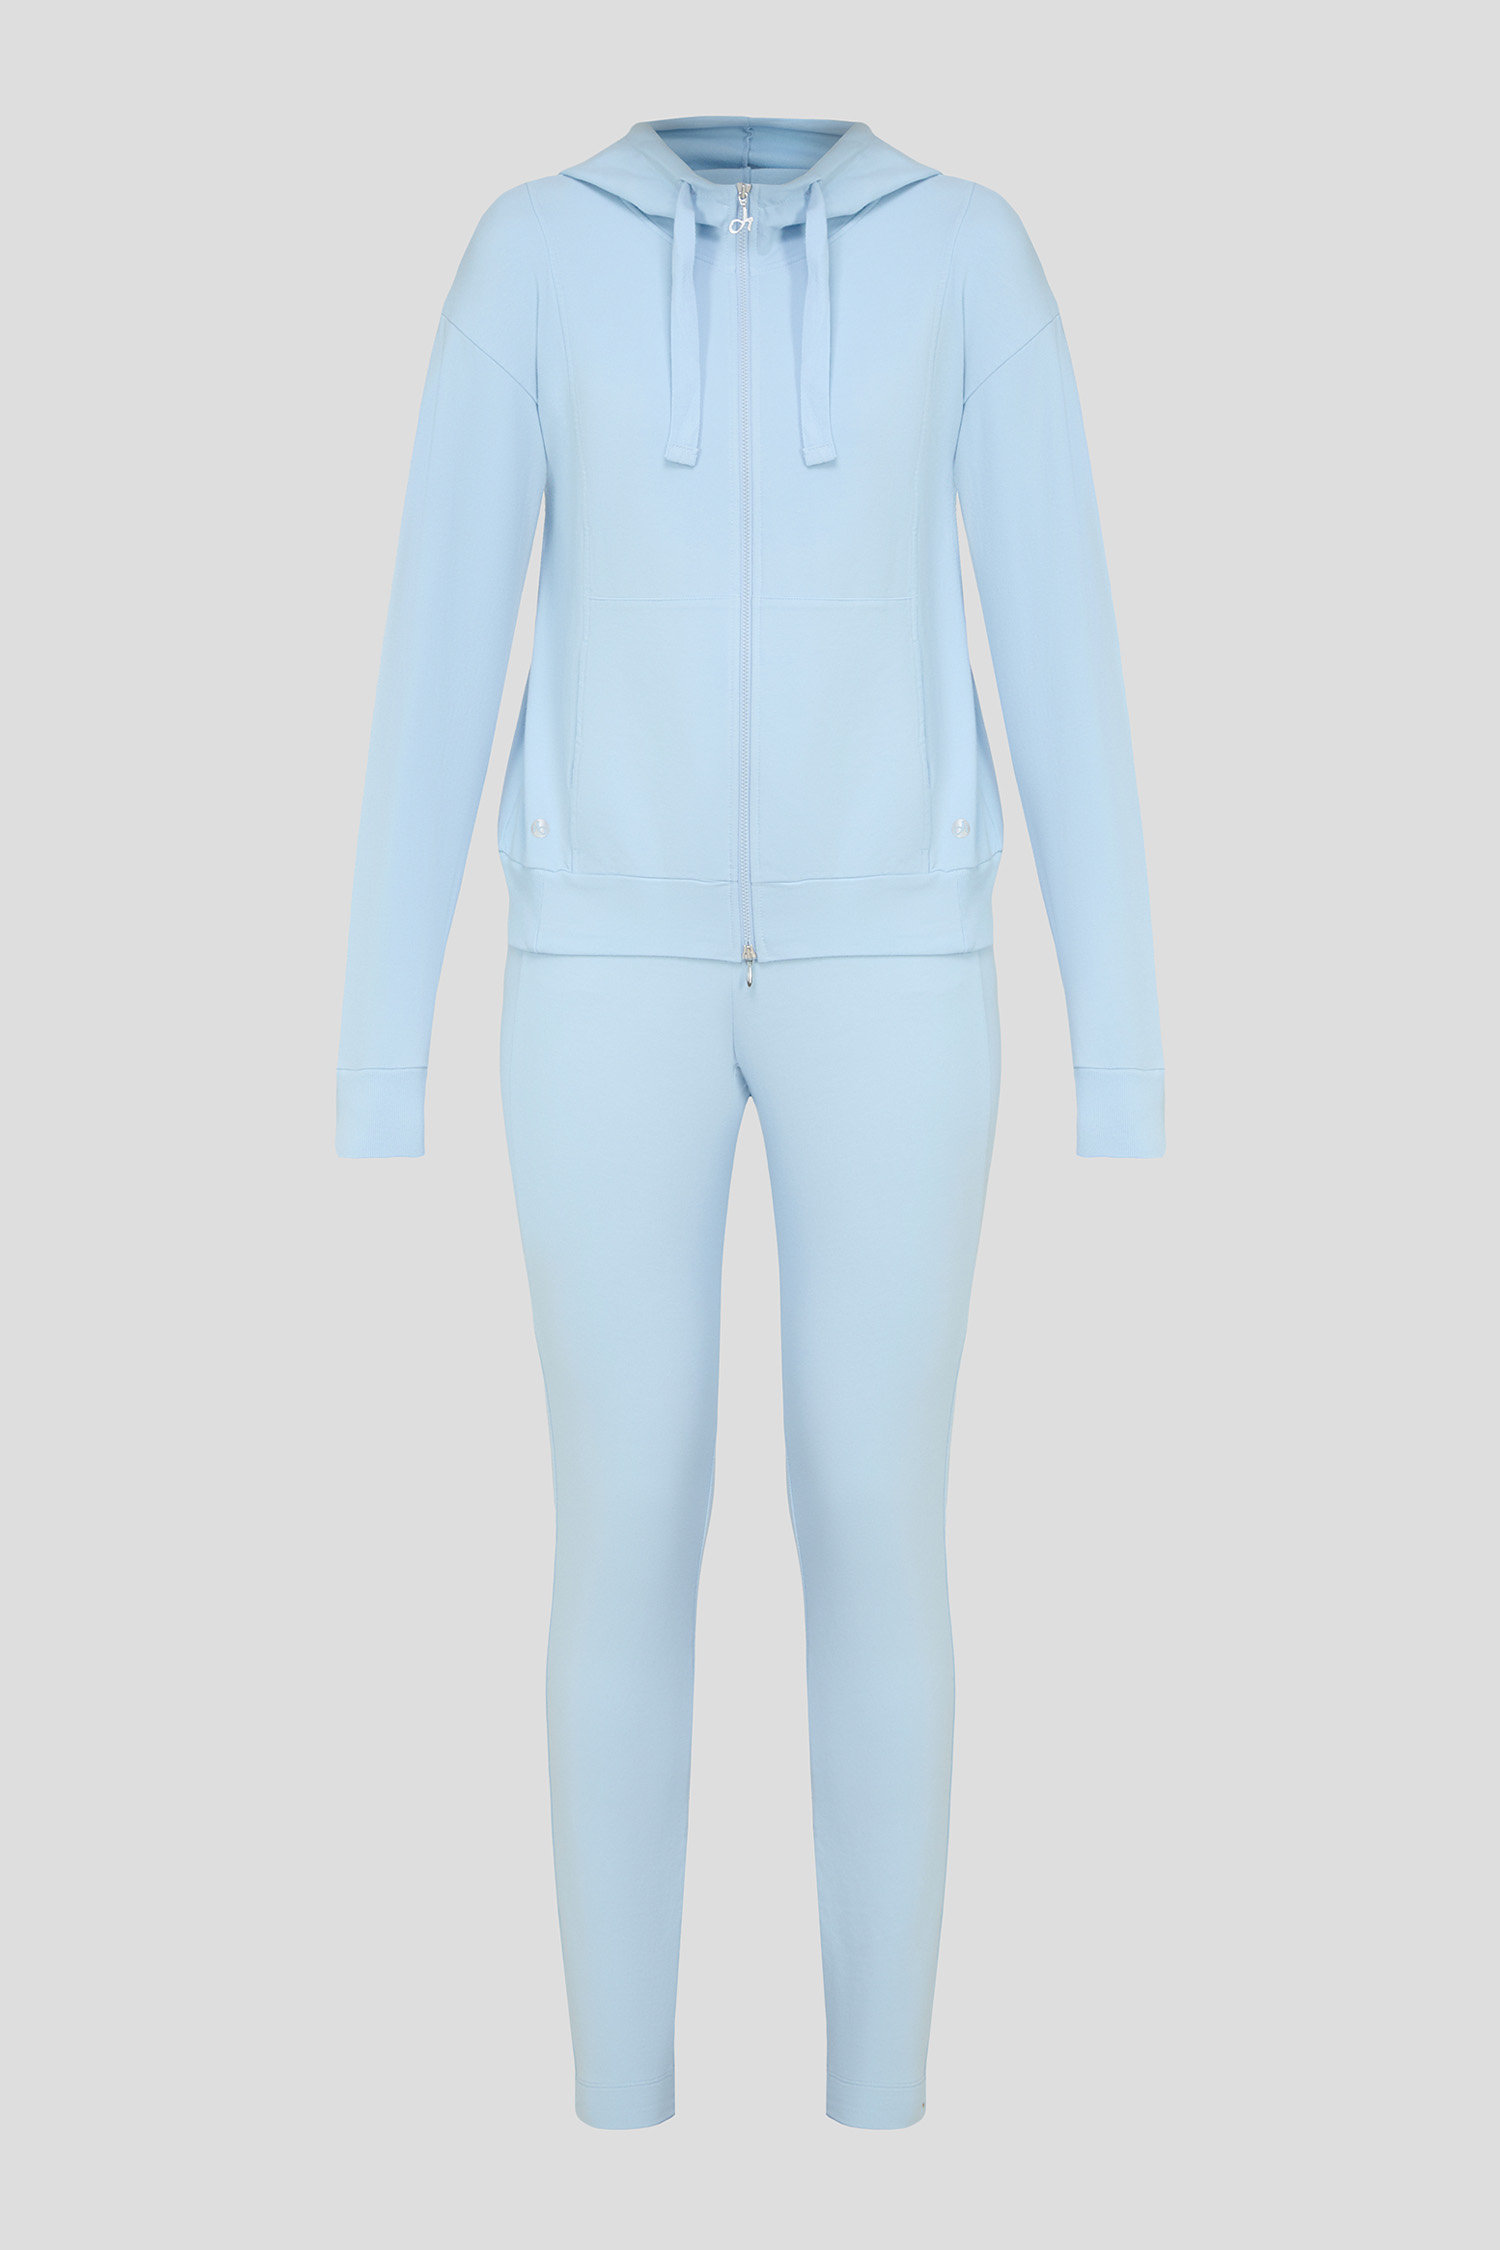 Жіночий блакитний спортивний костюм (худі, штани) 1